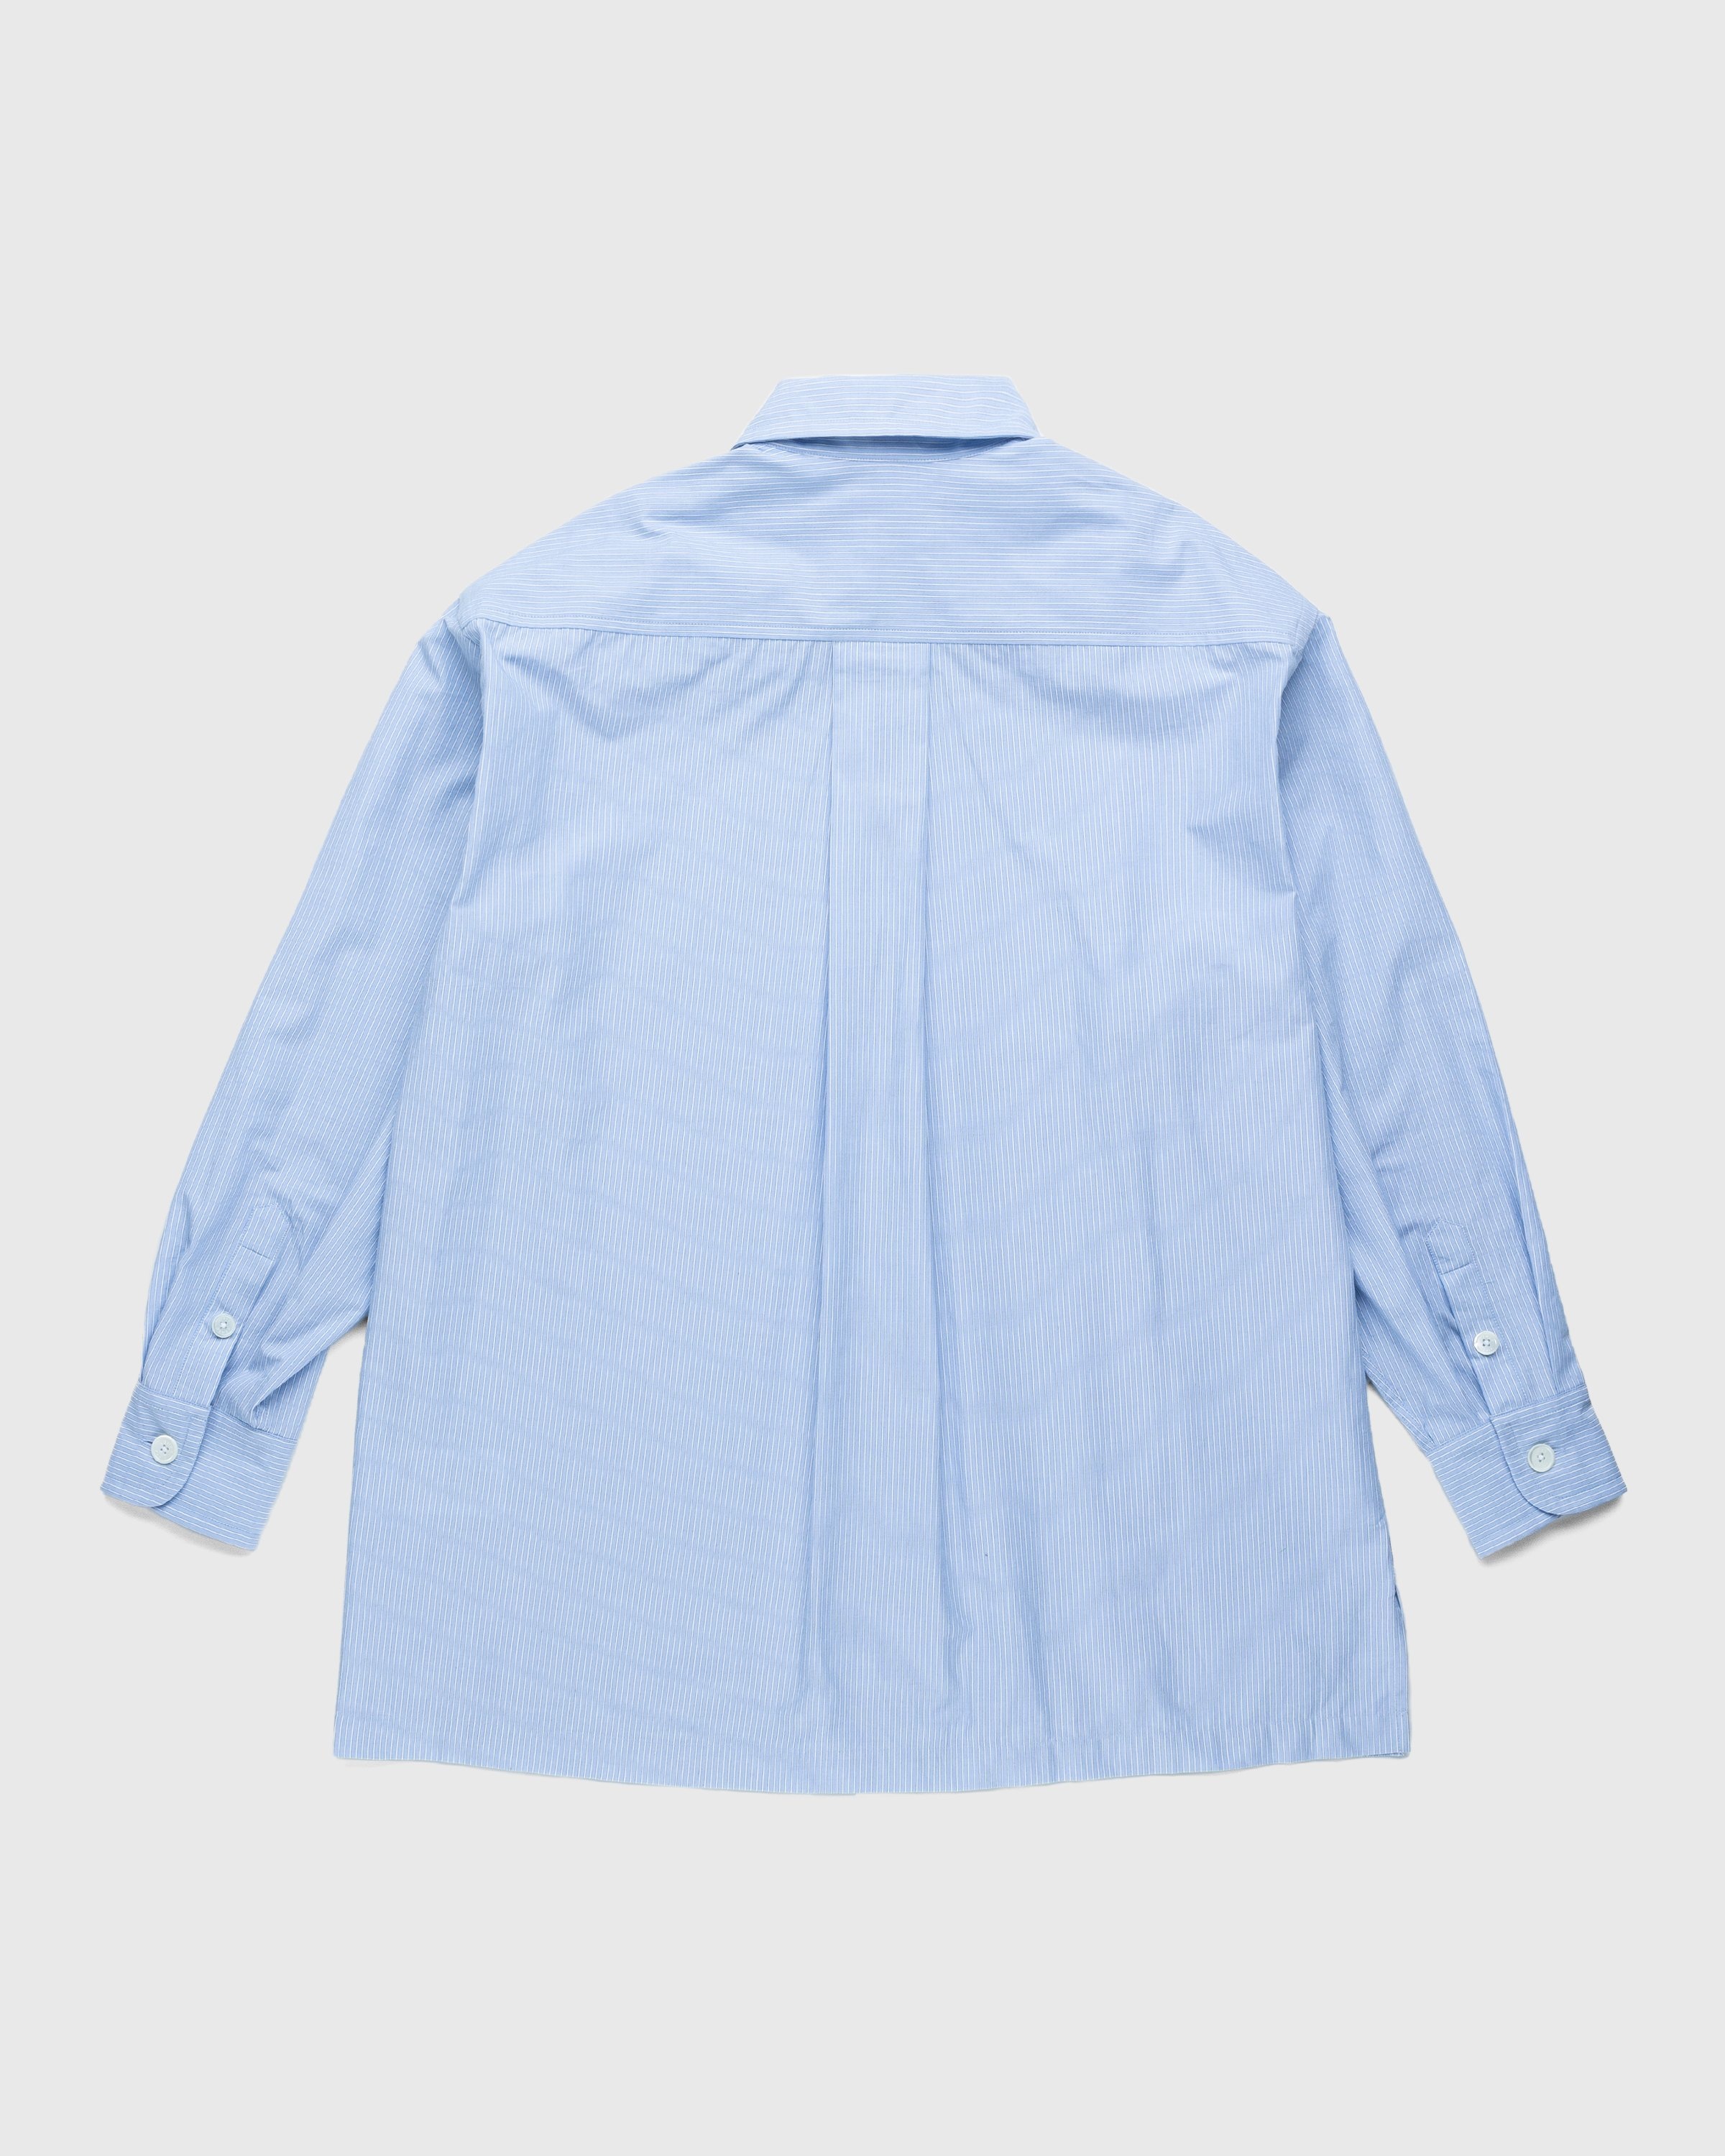 Kenzo – Boke Flower Crest Overshirt Sky Blue - Shirts - Blue - Image 2